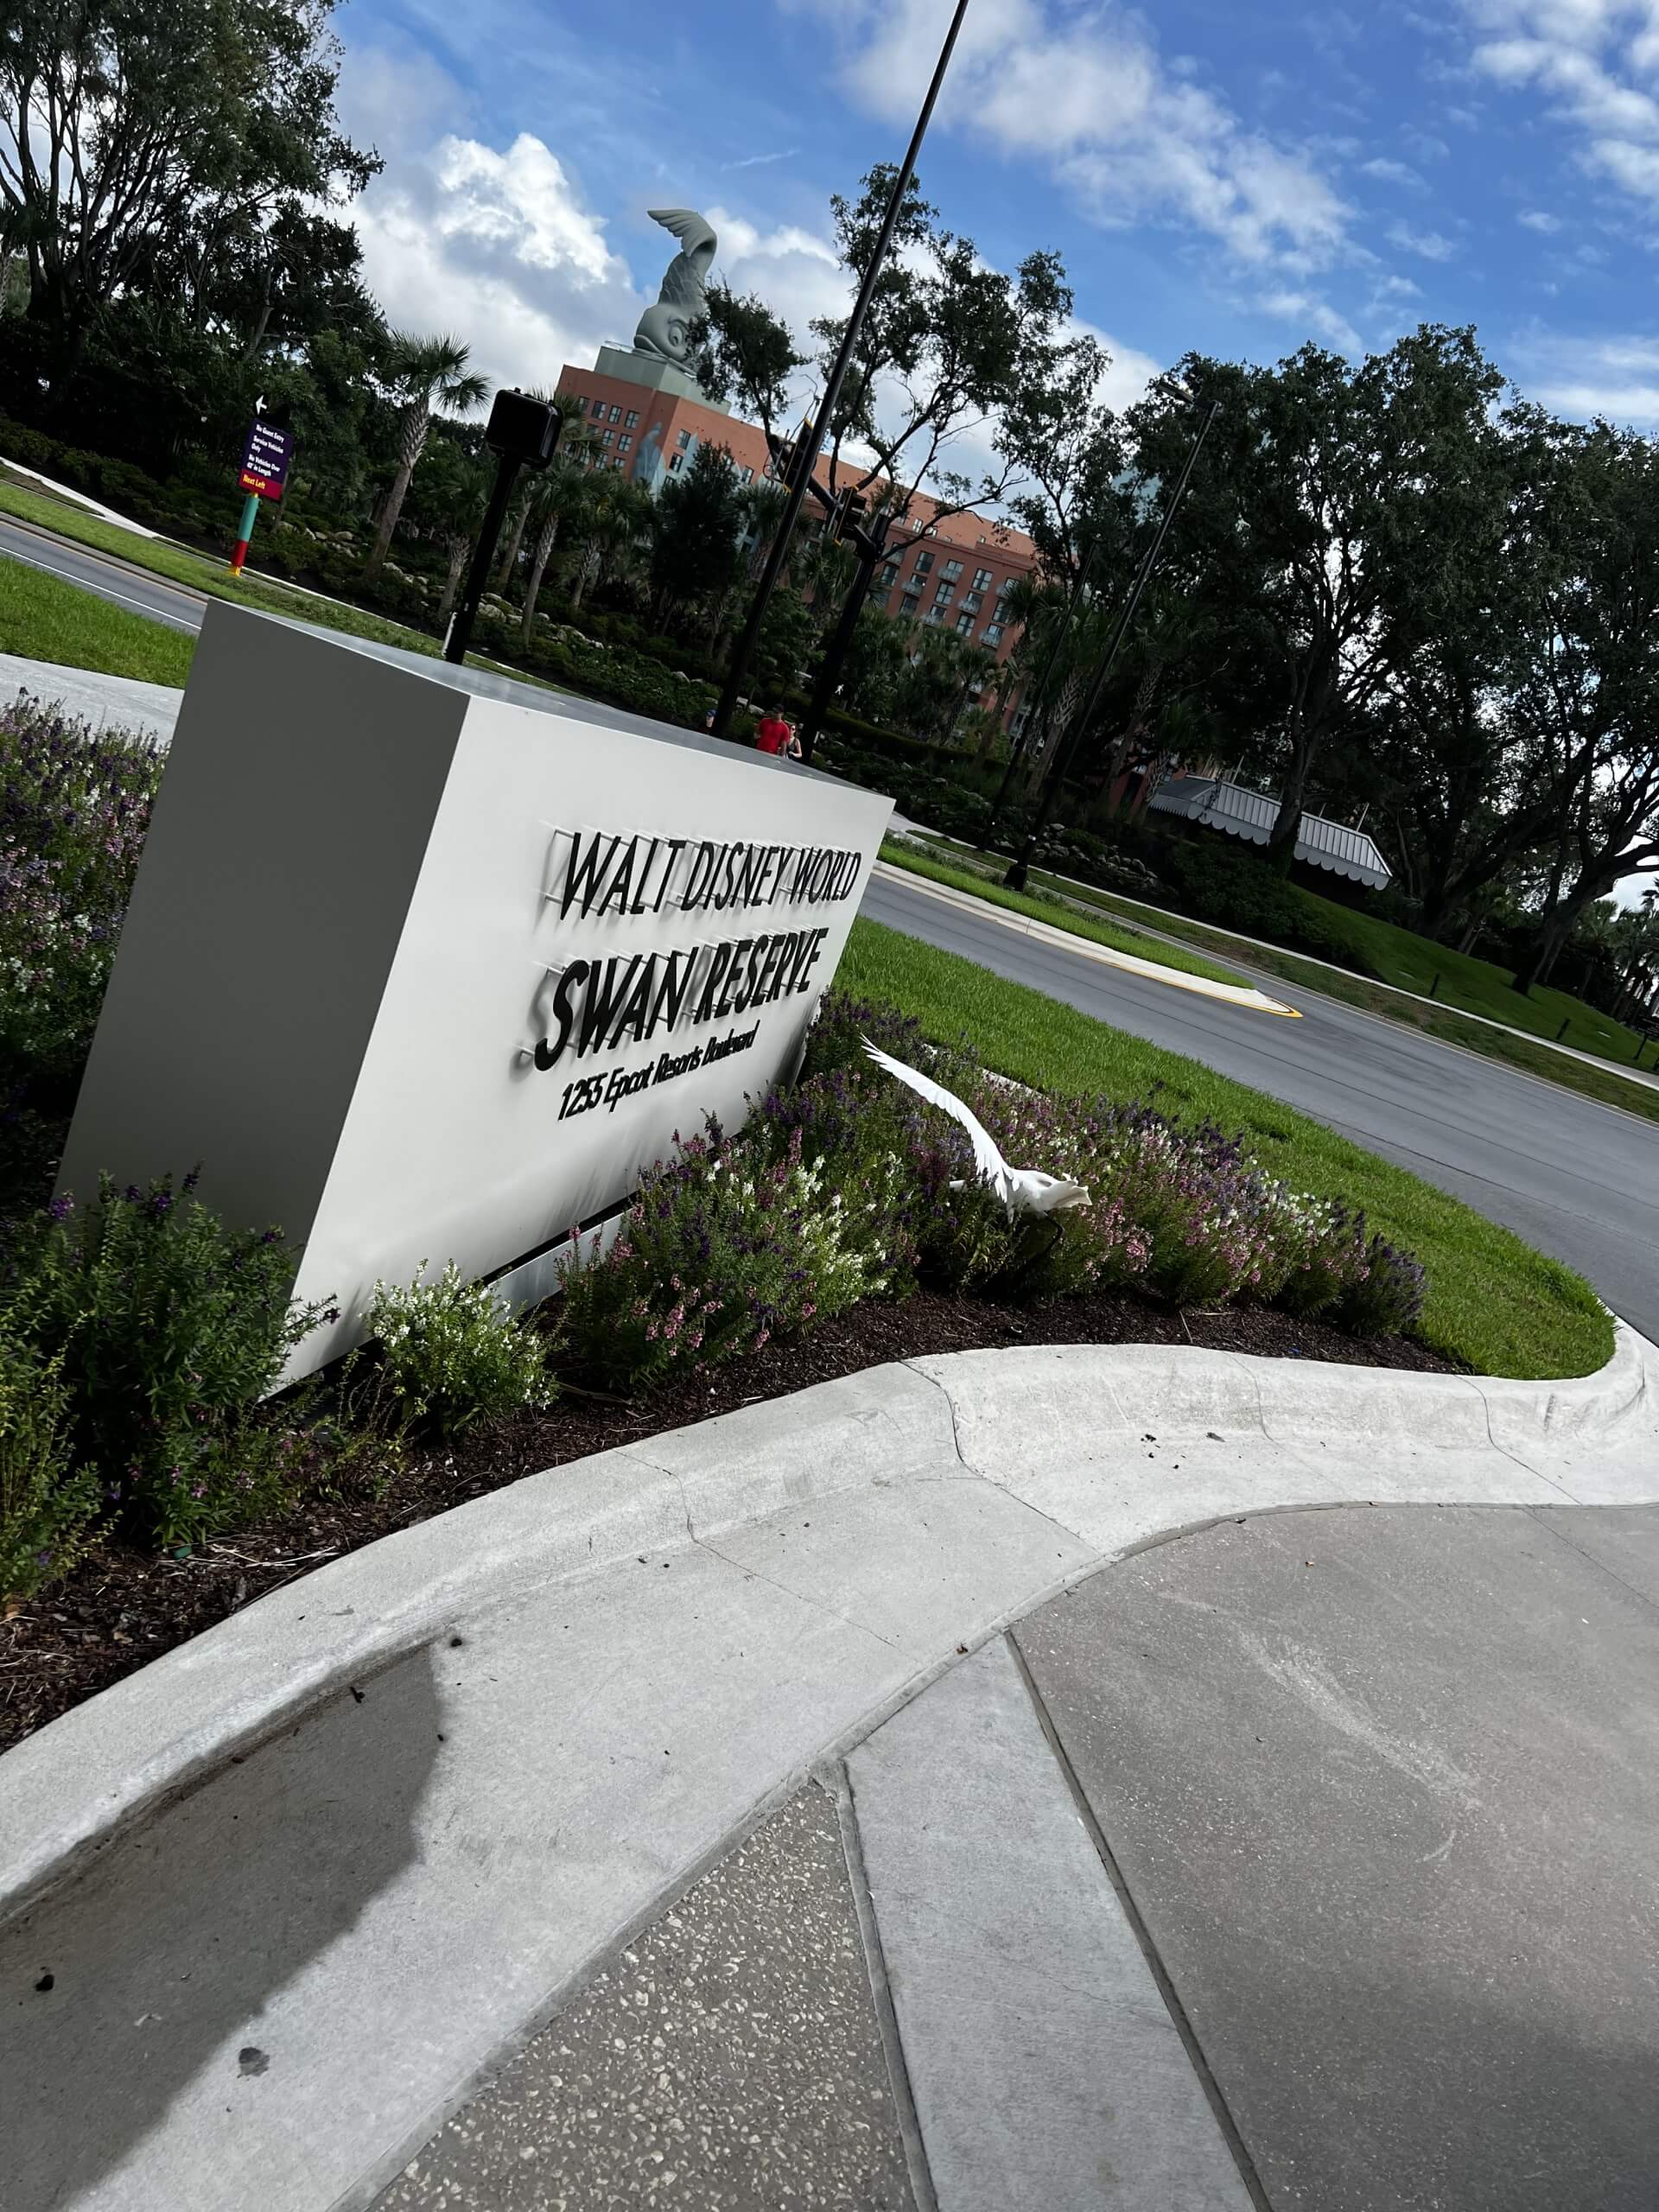 Front Entrance Sign to Walt Disney World Swan Reserve